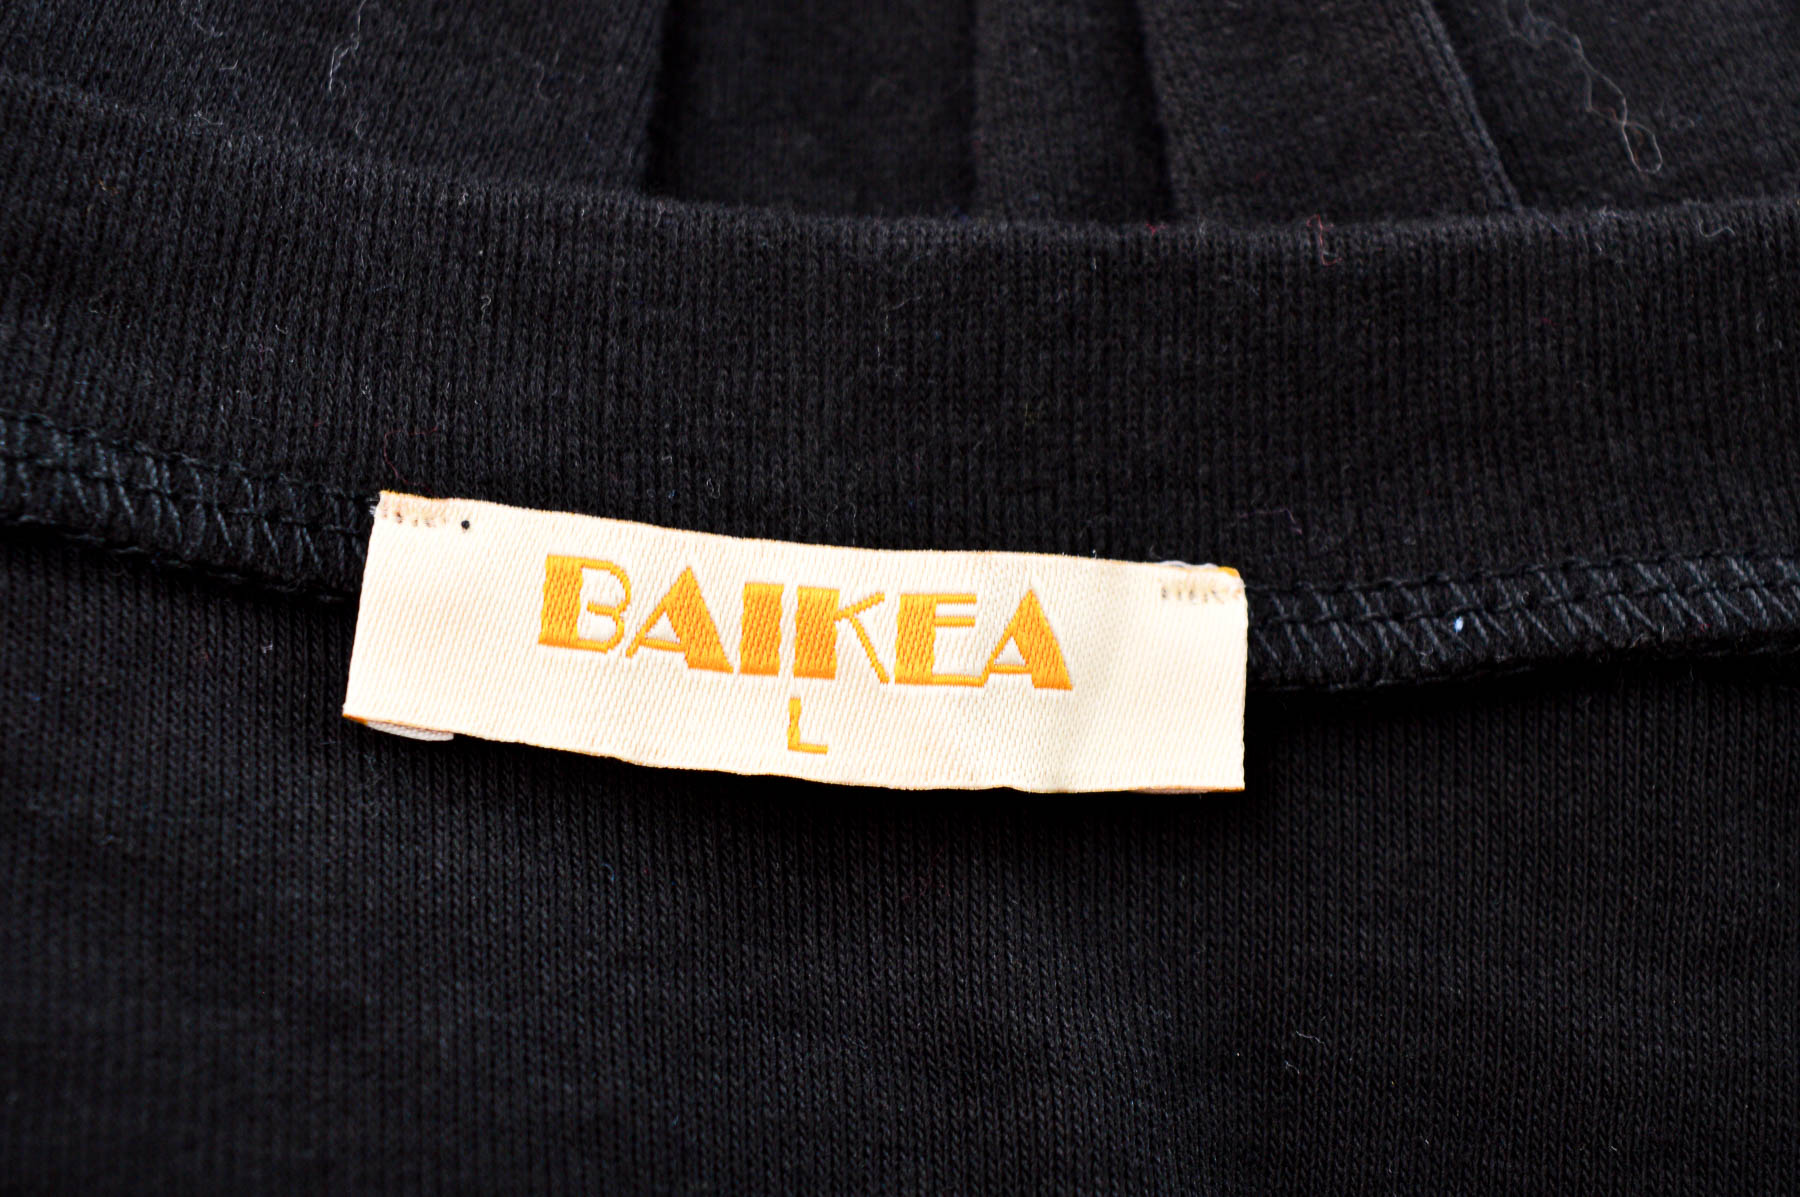 Γυναικεία μπλούζα - Baikea - 2